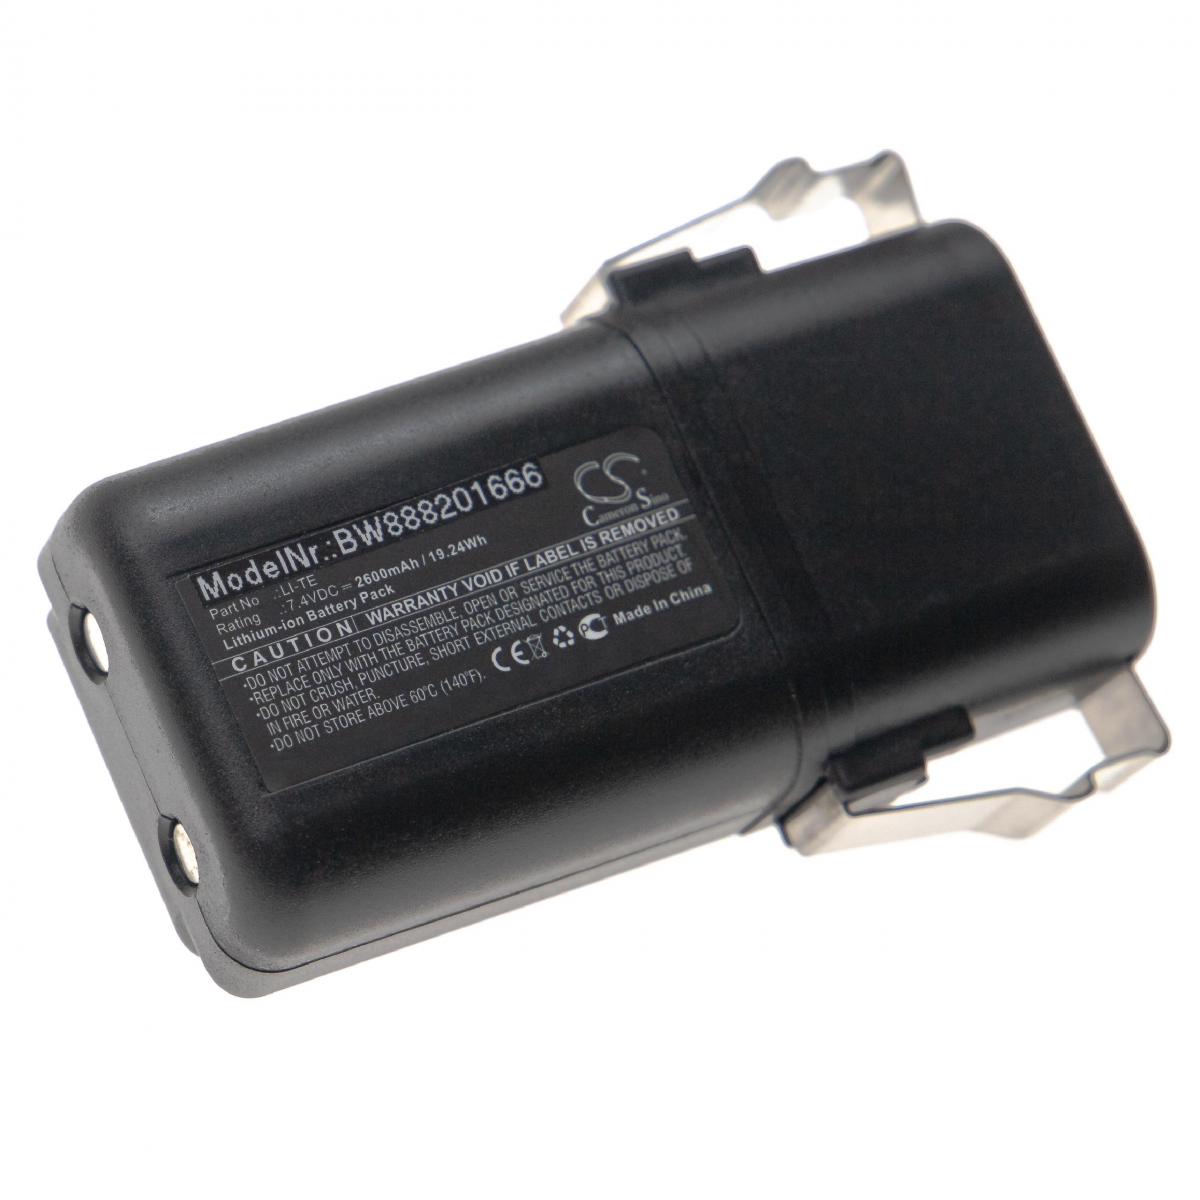 Vhbw - vhbw Batterie compatible avec Elca Bravo-M, Mirage-M télécommande industrielle (2600mAh, 7,4V, Li-Ion) - Autre appareil de mesure